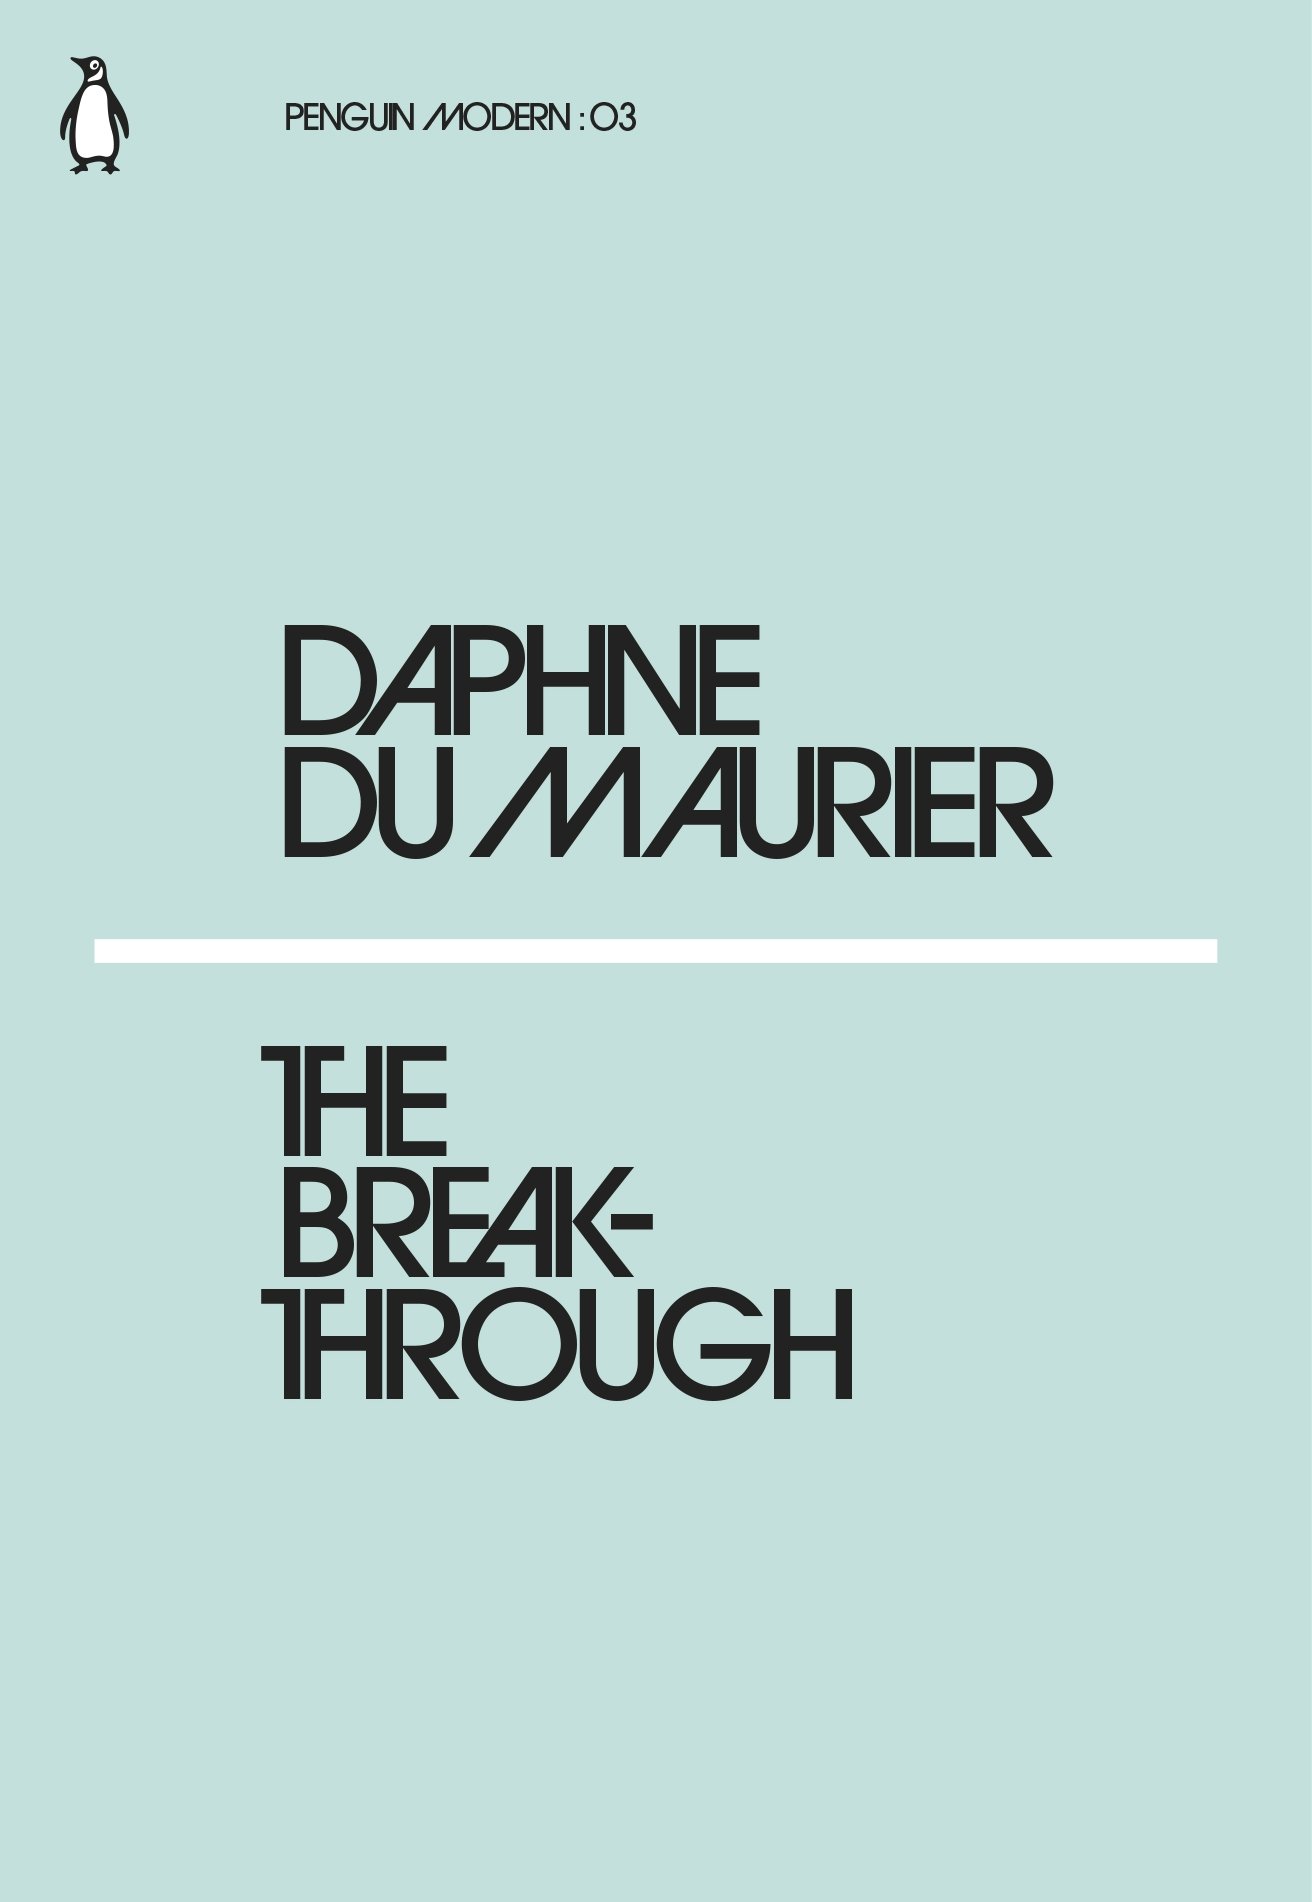 The Breakthrough | Daphne Du Maurier image7